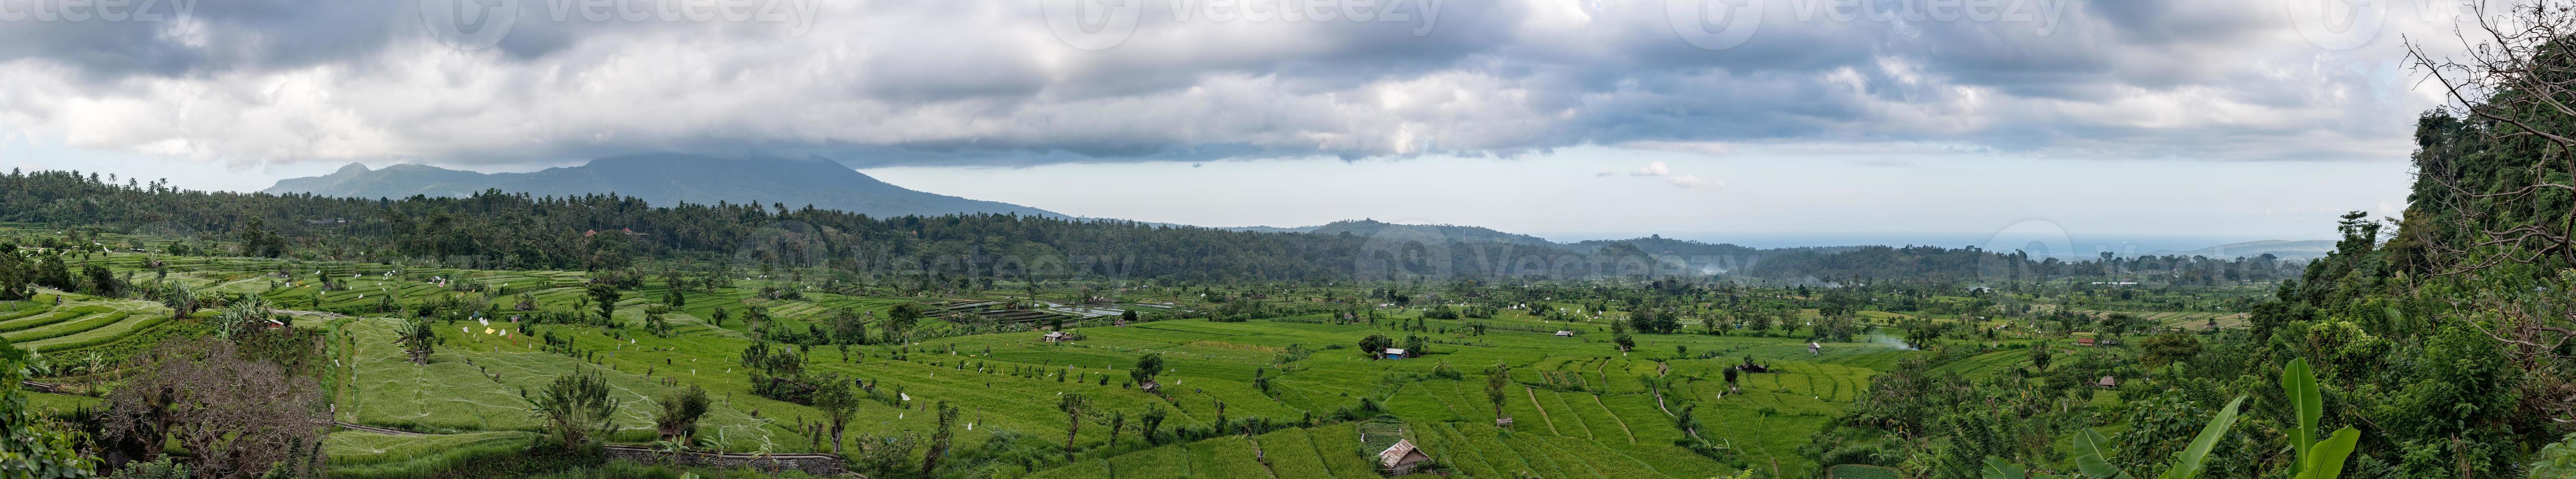 campo de arroz de bali enorme panorama paisagem cartaz vista foto